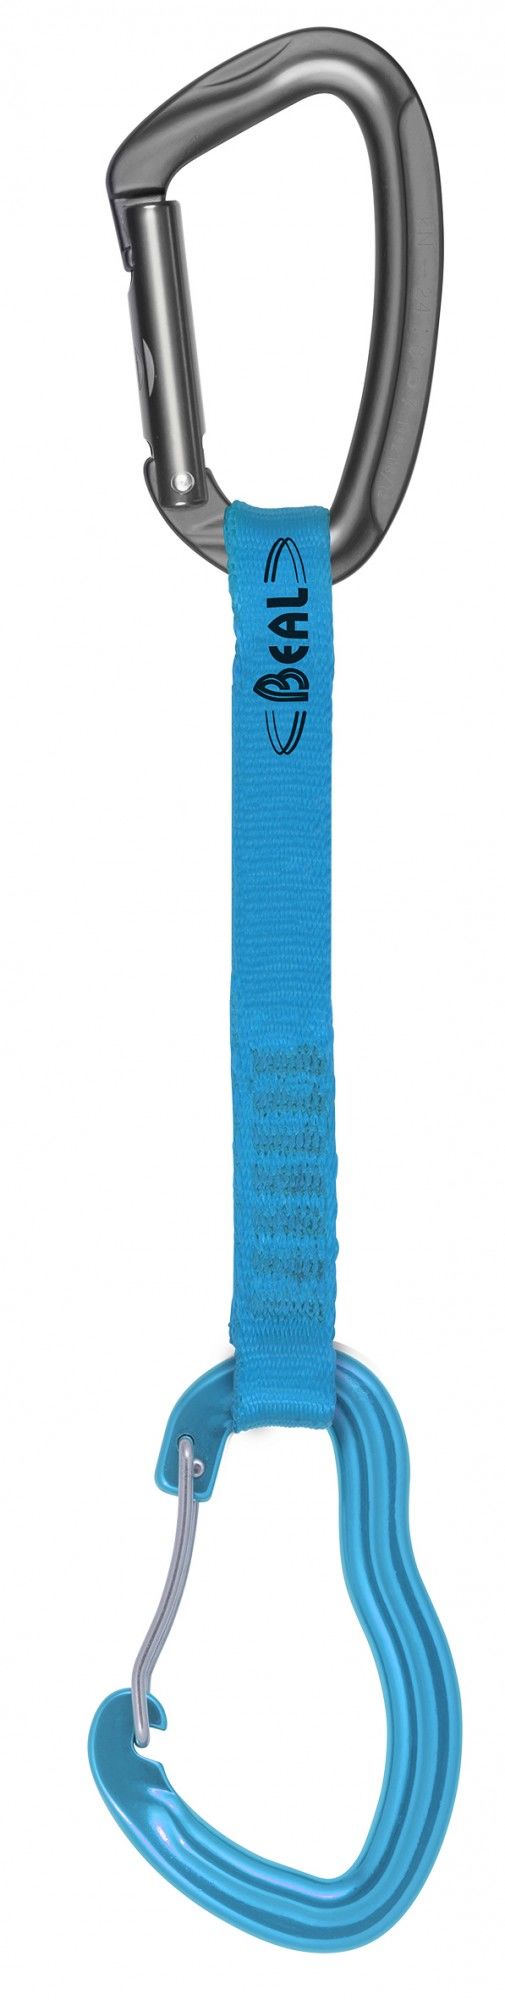 Beal Zest Expresse Blau | Größe 17 cm |  Kletterzubehör